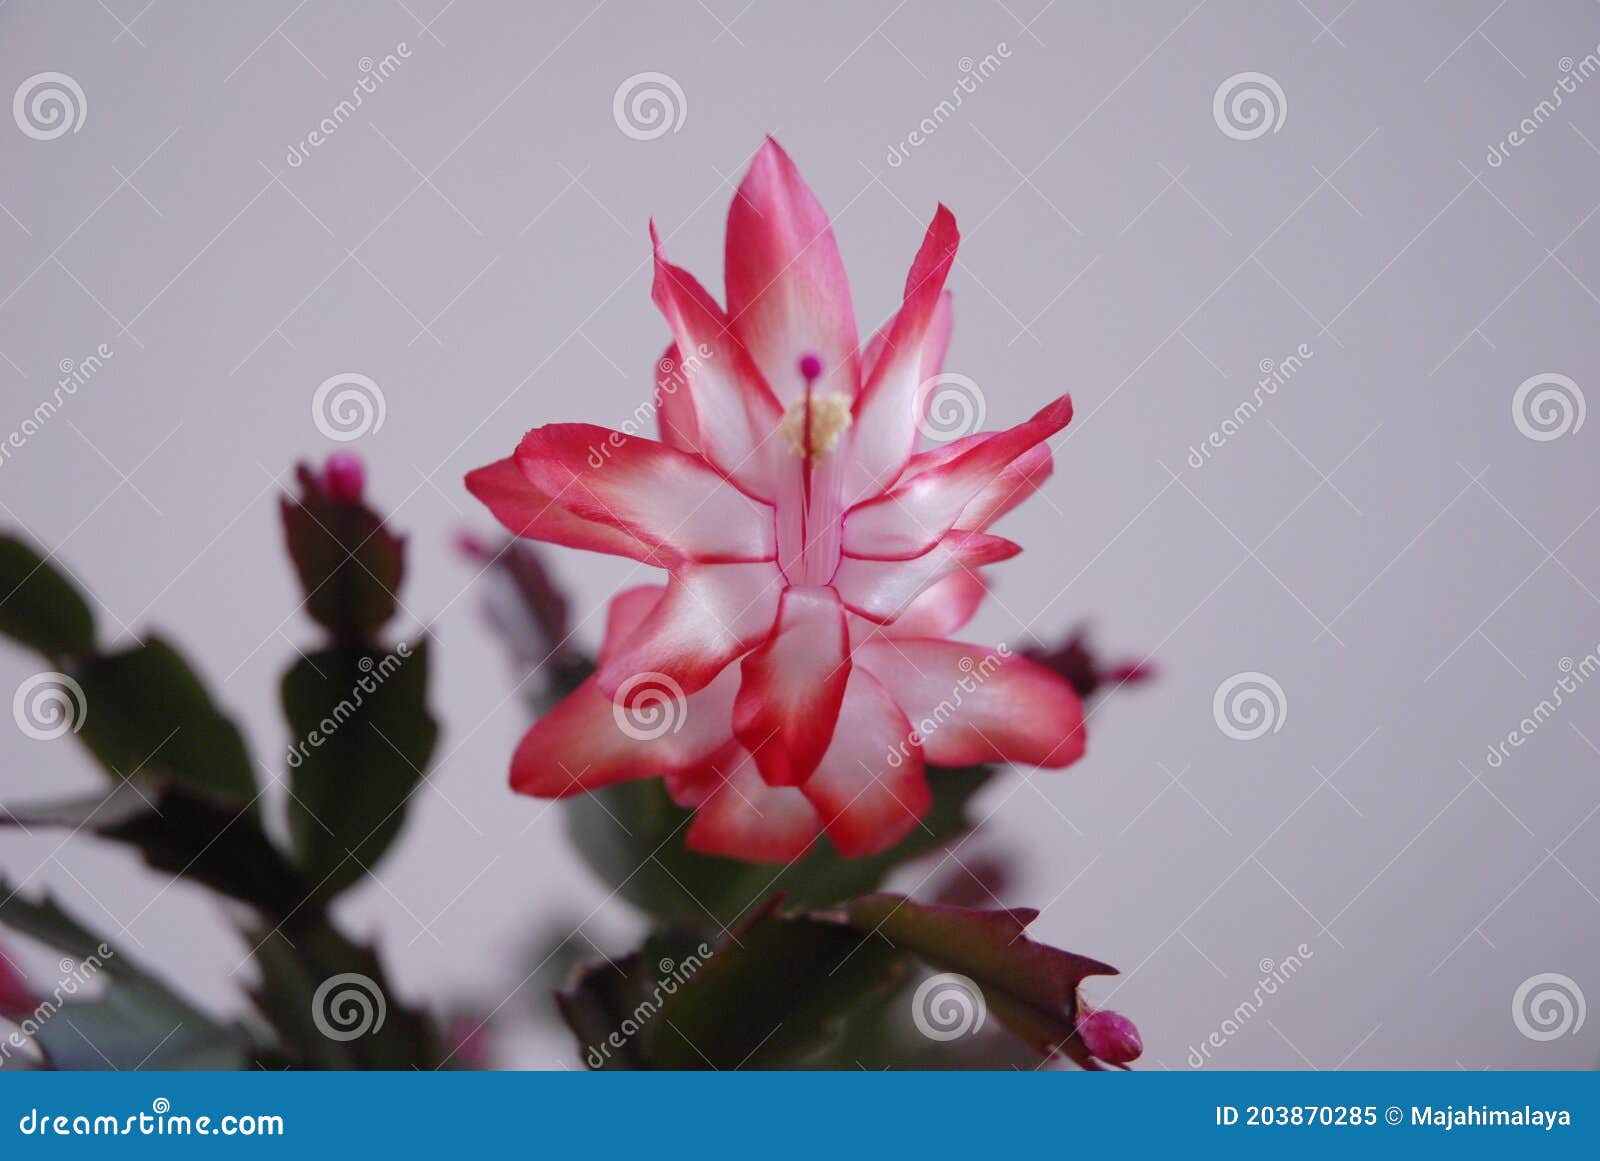 Flor De Cacto Rosa Delicado. Schlumbergera Christmas Cactus Com Flor Rosa.  Planta Suculenta Fofa. Imagem de Stock - Imagem de naughty, flores:  203870285